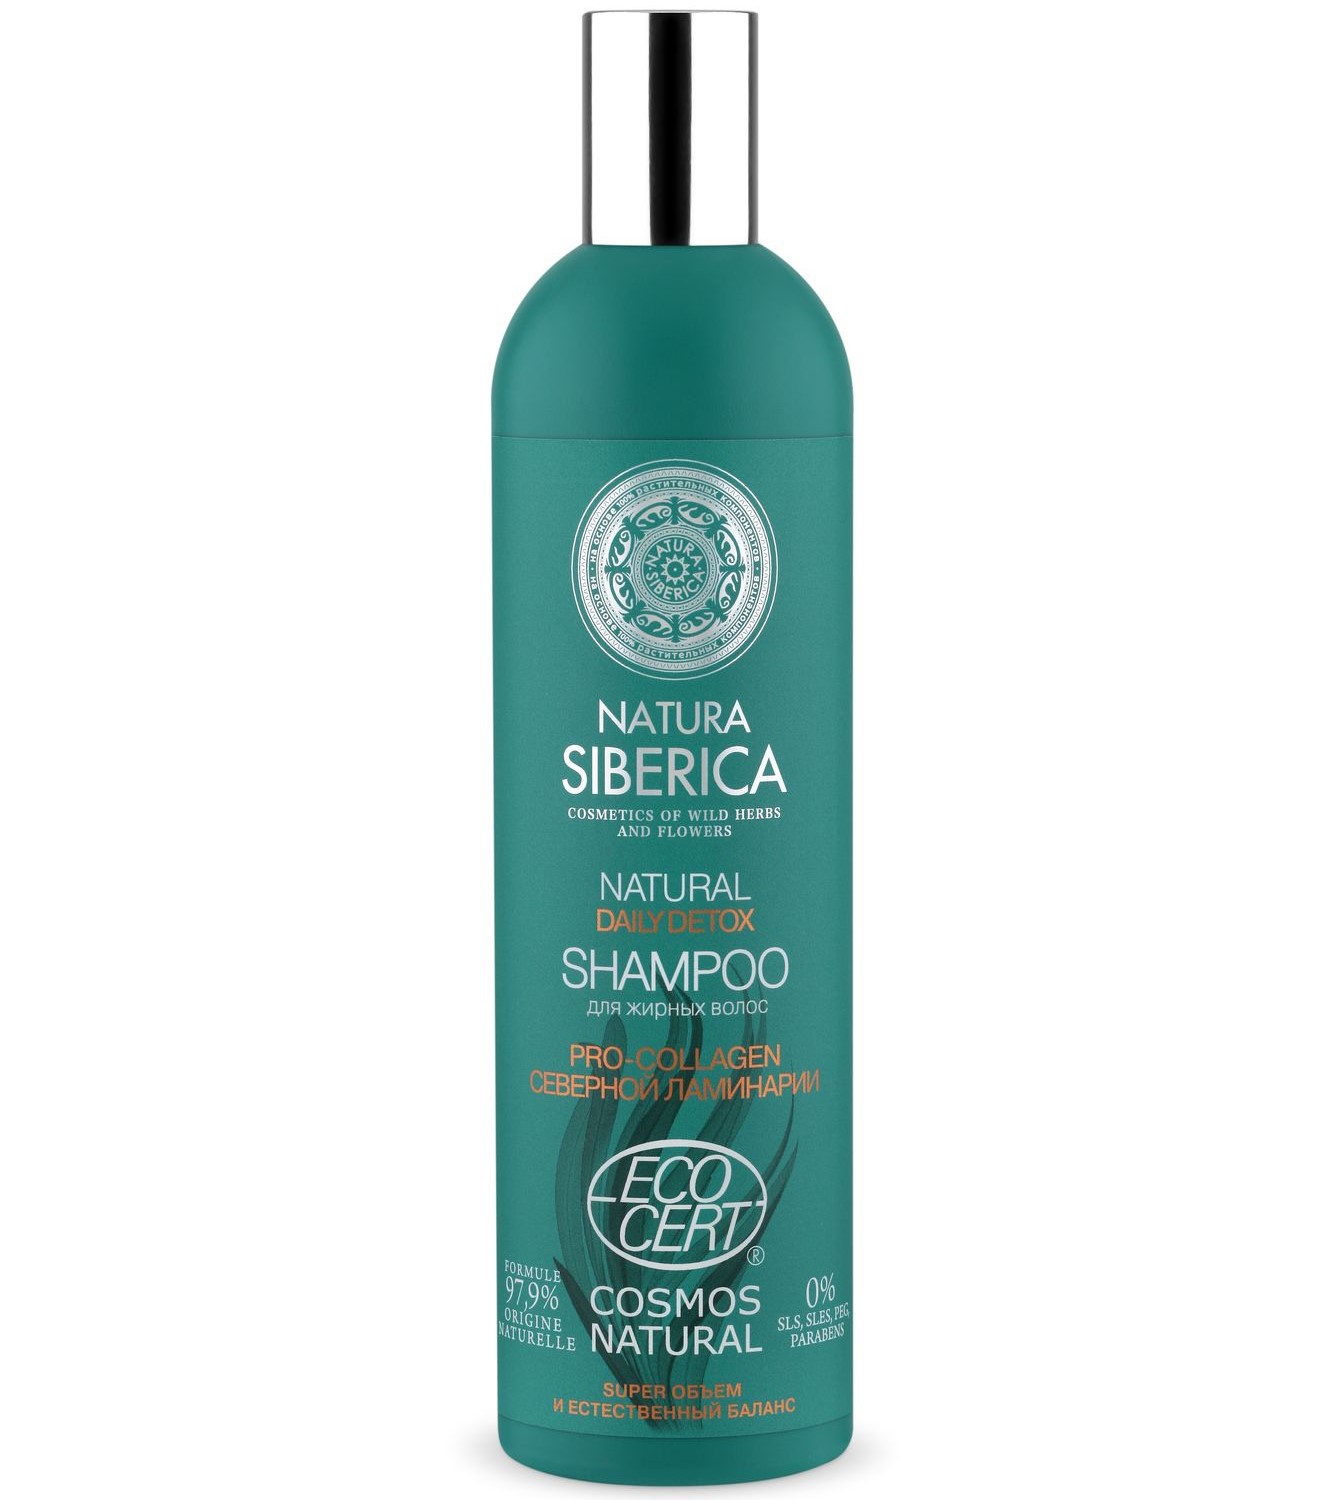 Купить Natura Siberica Сертифицированный шампунь для жирных волос Daily Detox, 400 мл (Natura Siberica, Классика), Россия